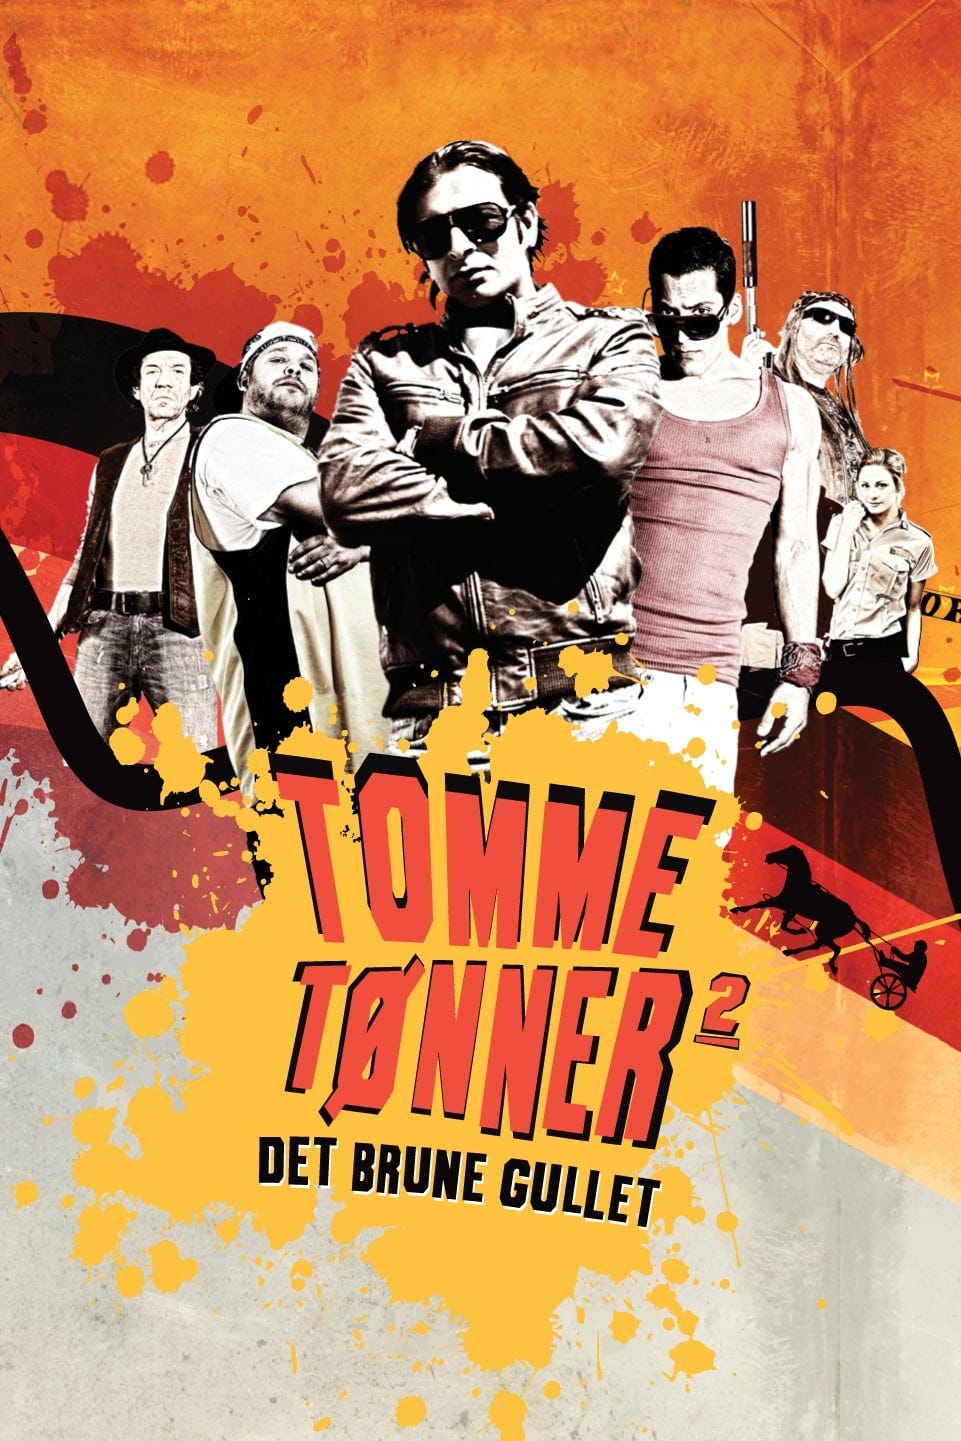 Tomme tønner 2 - Det brune gullet (2011) | Poster